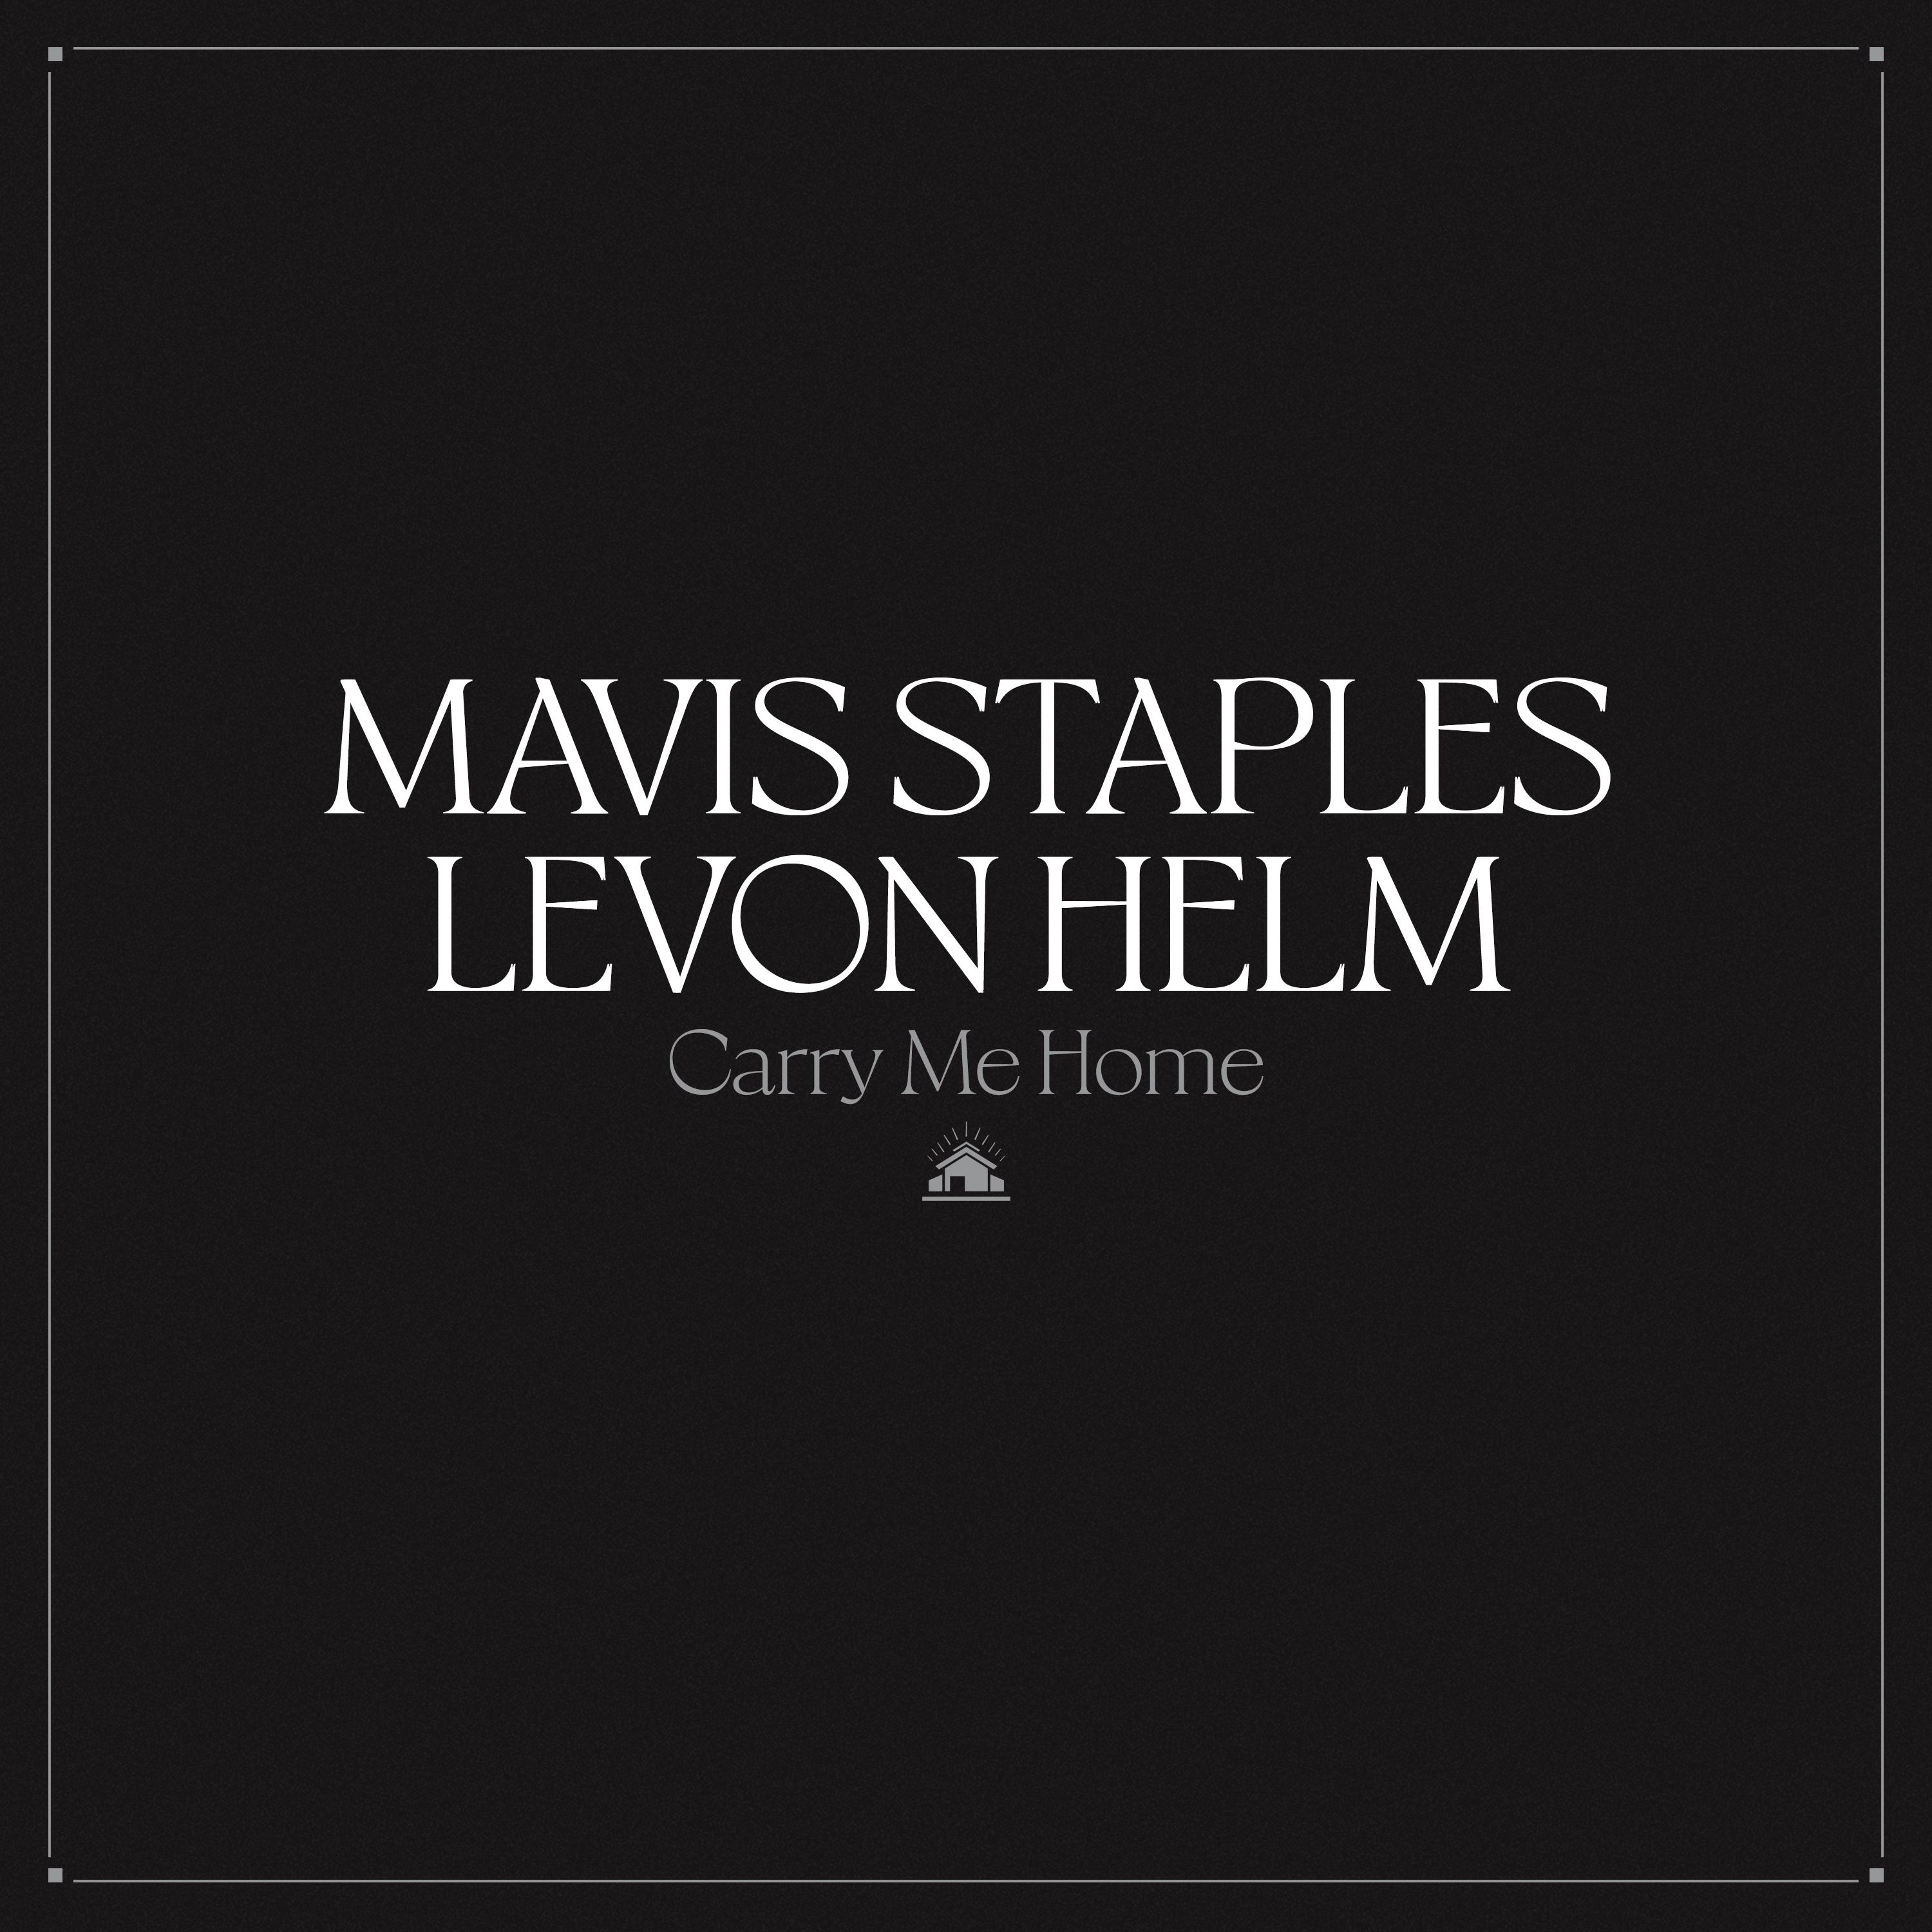 Mavis Staples - The Weight